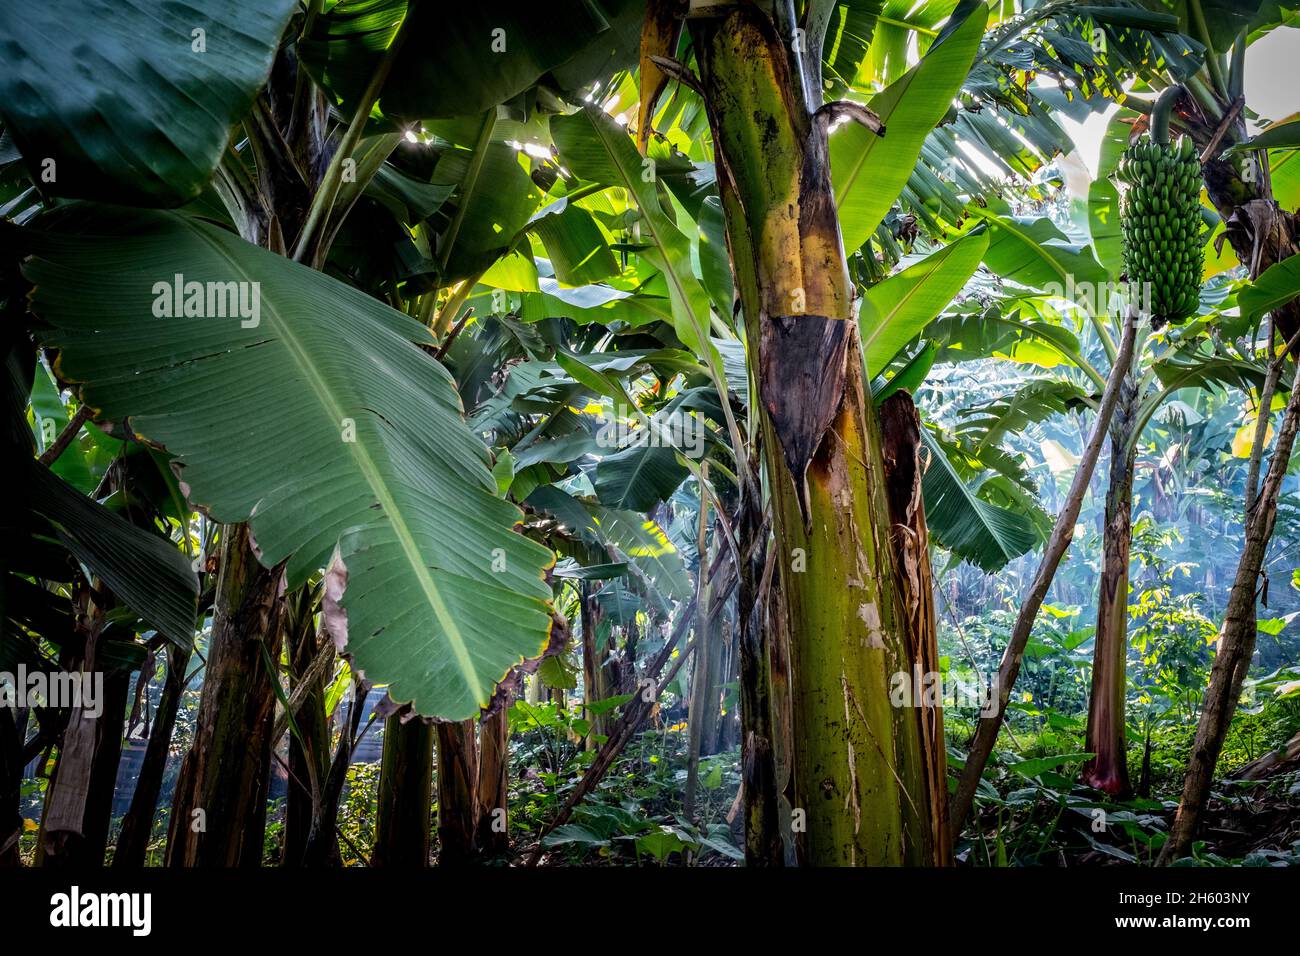 September 2017. Bananen sind eine gewöhnliche Ernte, die in der Nähe der Grenzen des Biwindi Impenetrable National Park angebaut wird. Konflikte zwischen Mensch und Natur treten manchmal auf, wenn Gorillas den Wald verlassen, um in der Nähe gelegene Pflanzen zu überfallen. Buhoma, Uganda. Stockfoto